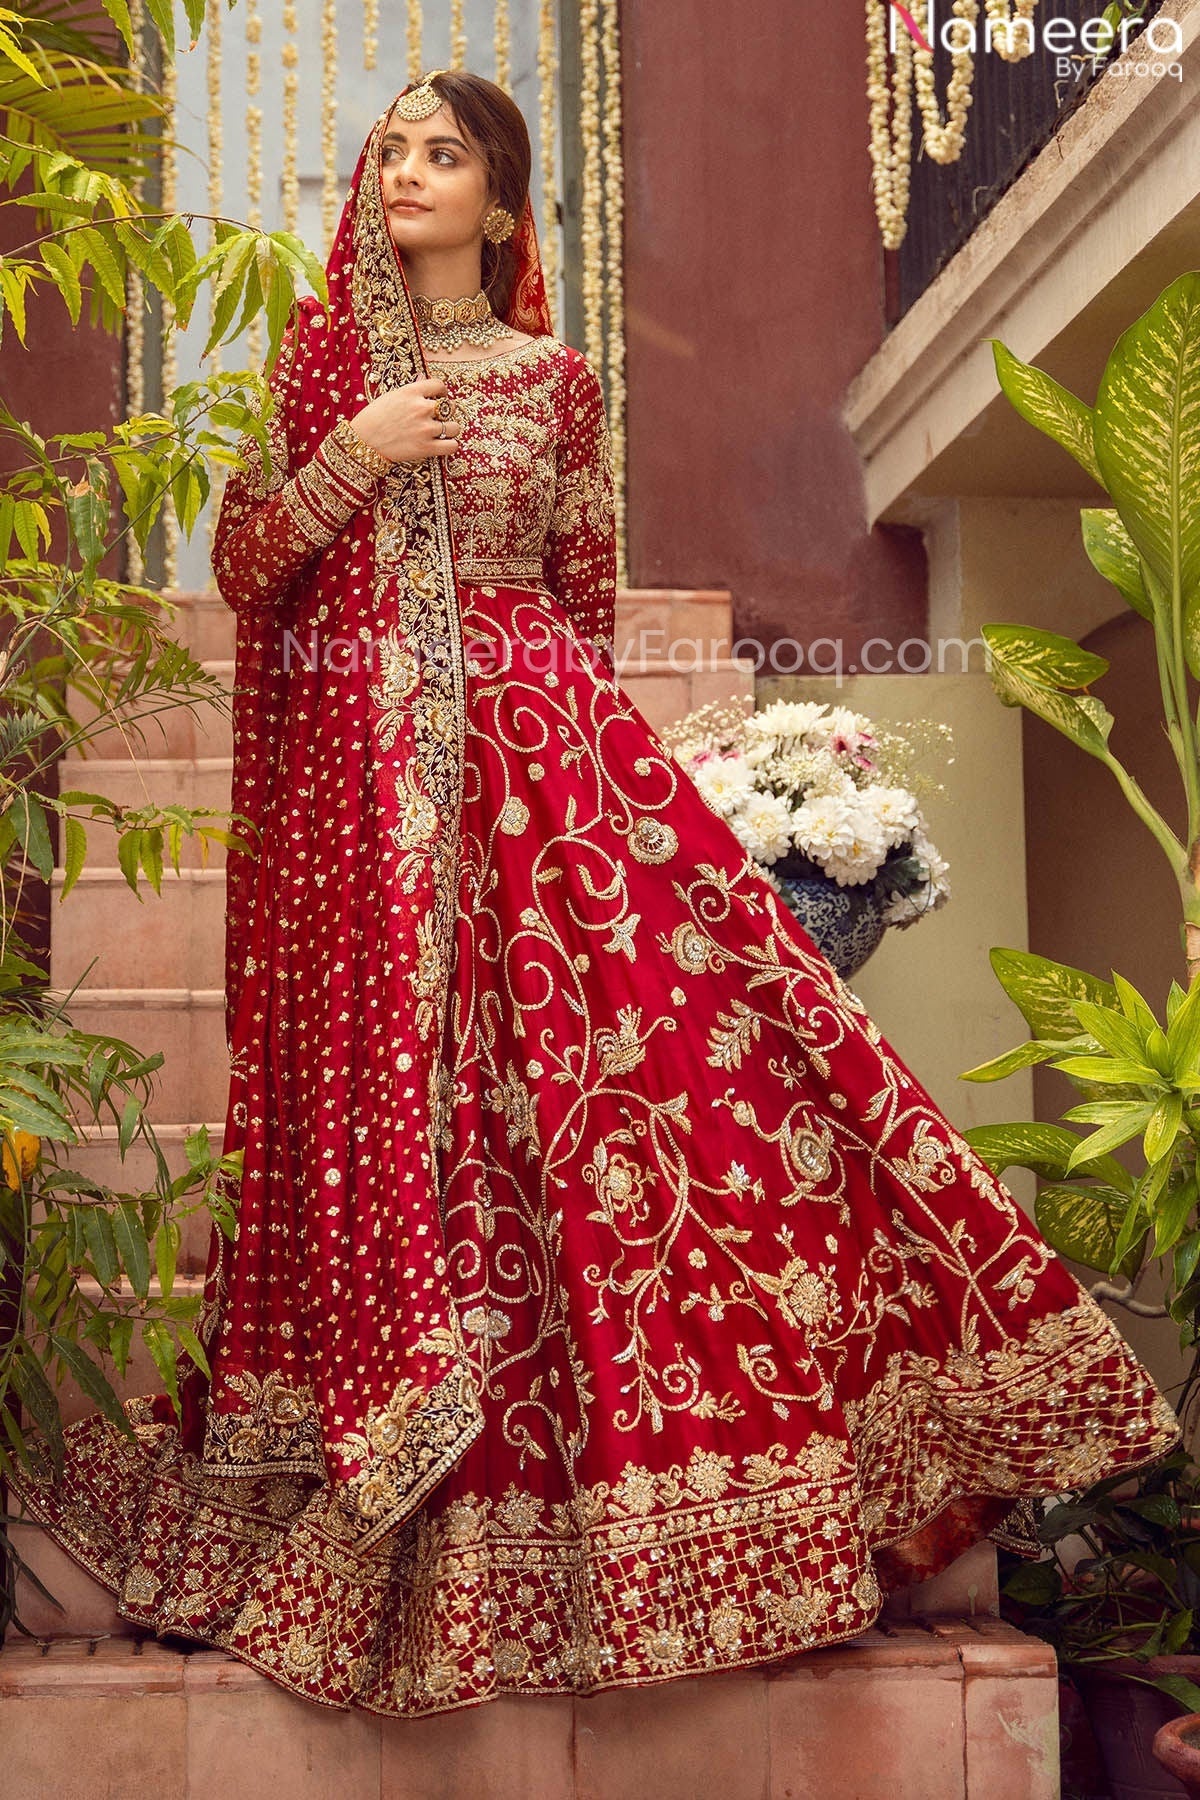 Pretty Red Bridal Dress Pakistani Designer Attire Online 2021 Nameera By Farooq 